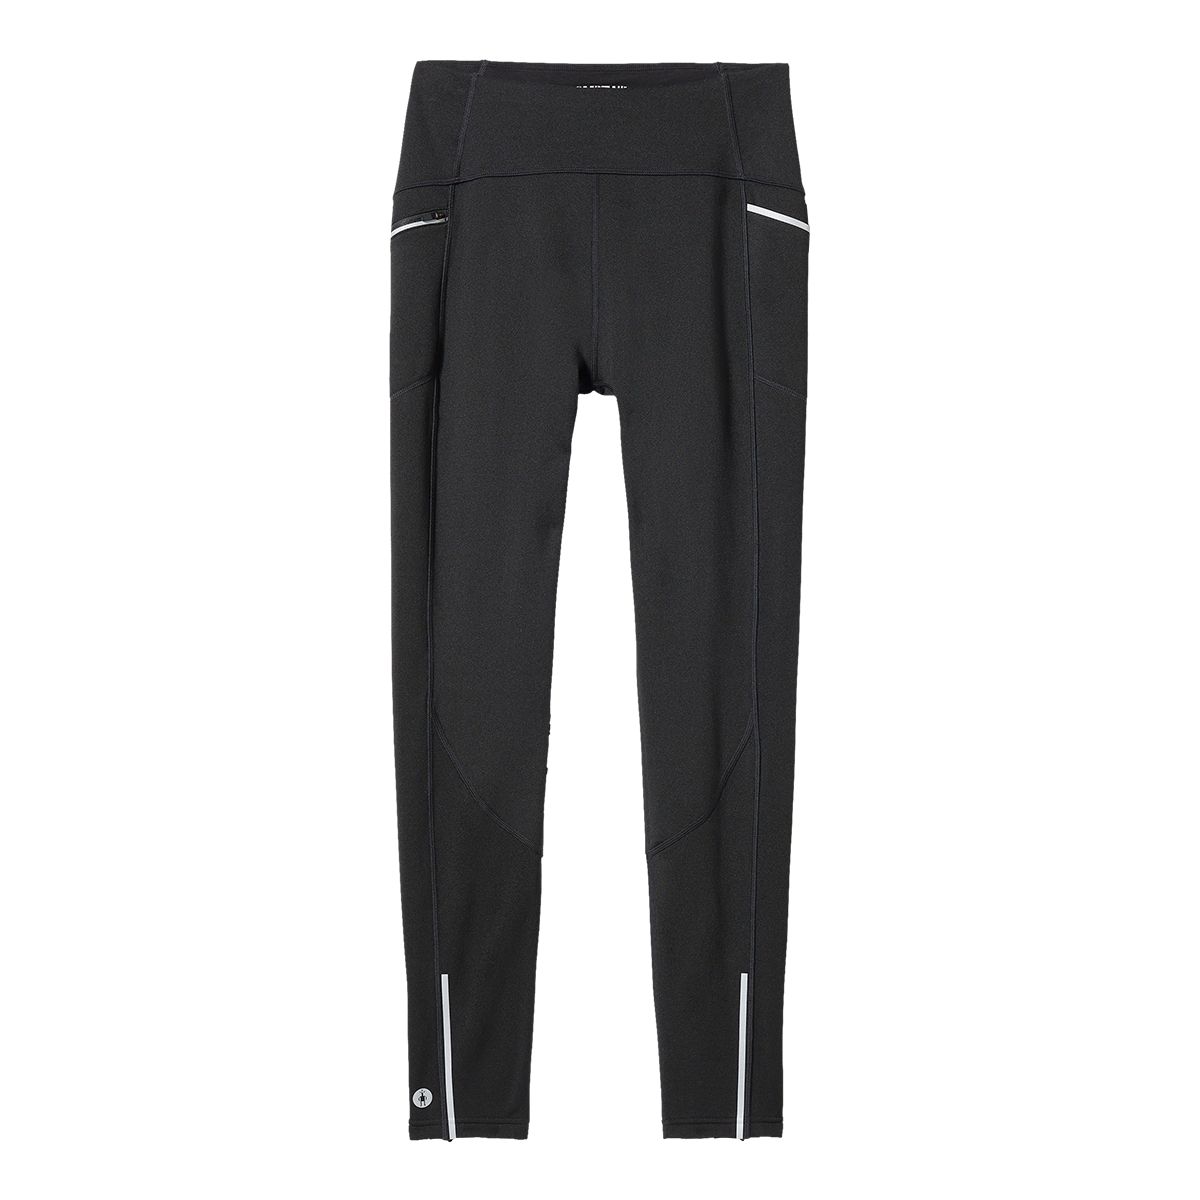 Athleta, Pants & Jumpsuits, Athleta Peak Hybrid Fleece Tight In Black